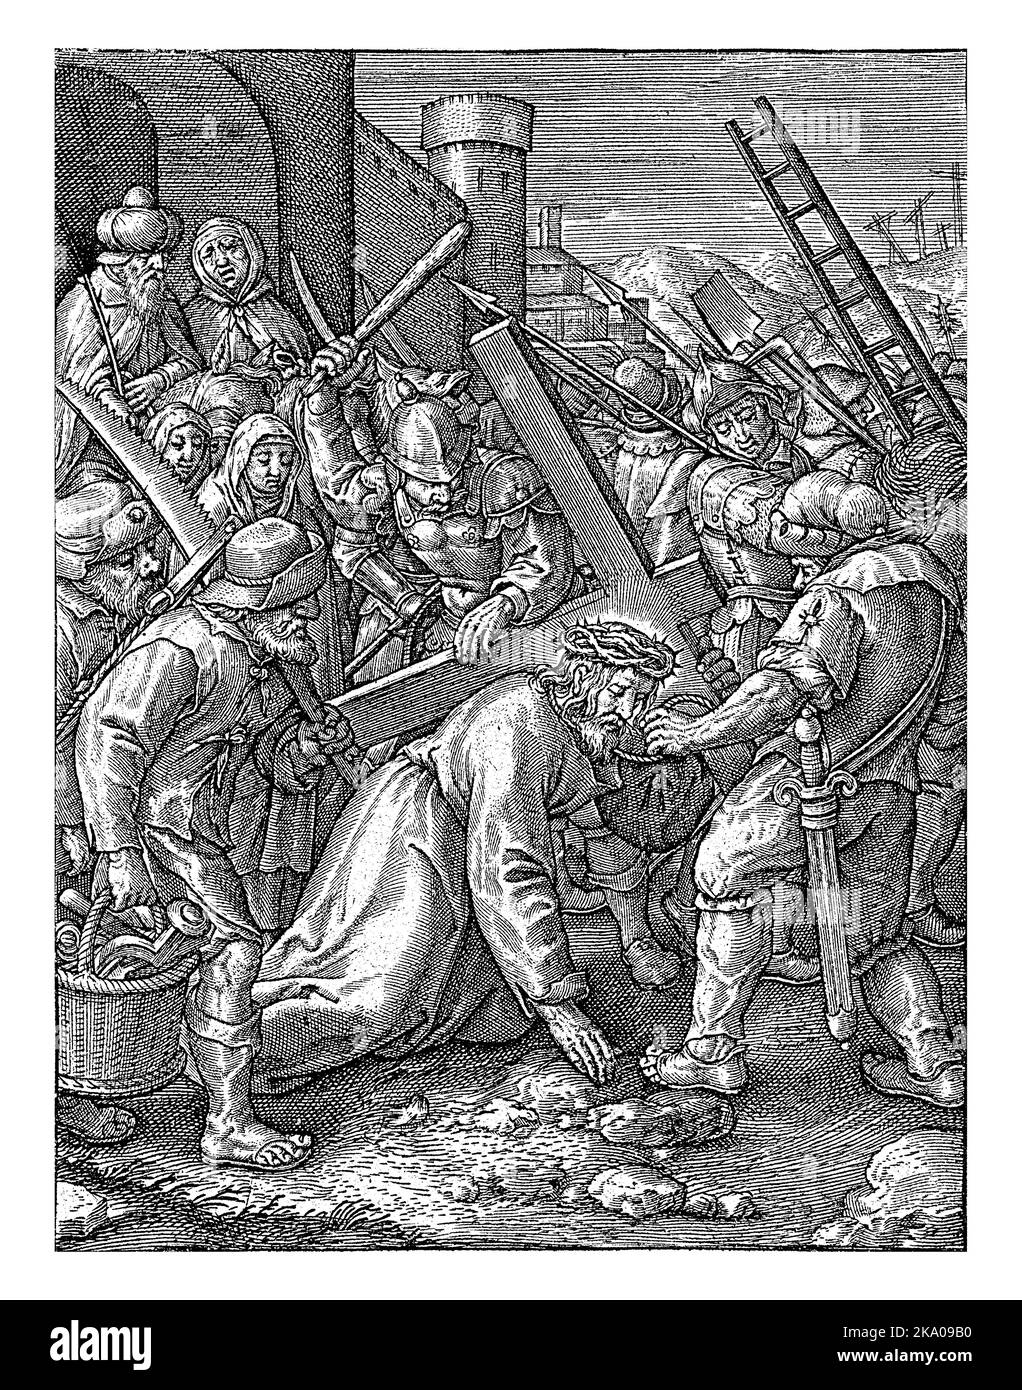 Portando la Croce, Hieronymus Wierix, 1563 - prima del 1619 Cristo cade mentre porta la sua croce al Calvario. Un soldato romano lo esorta a alzarsi. Foto Stock